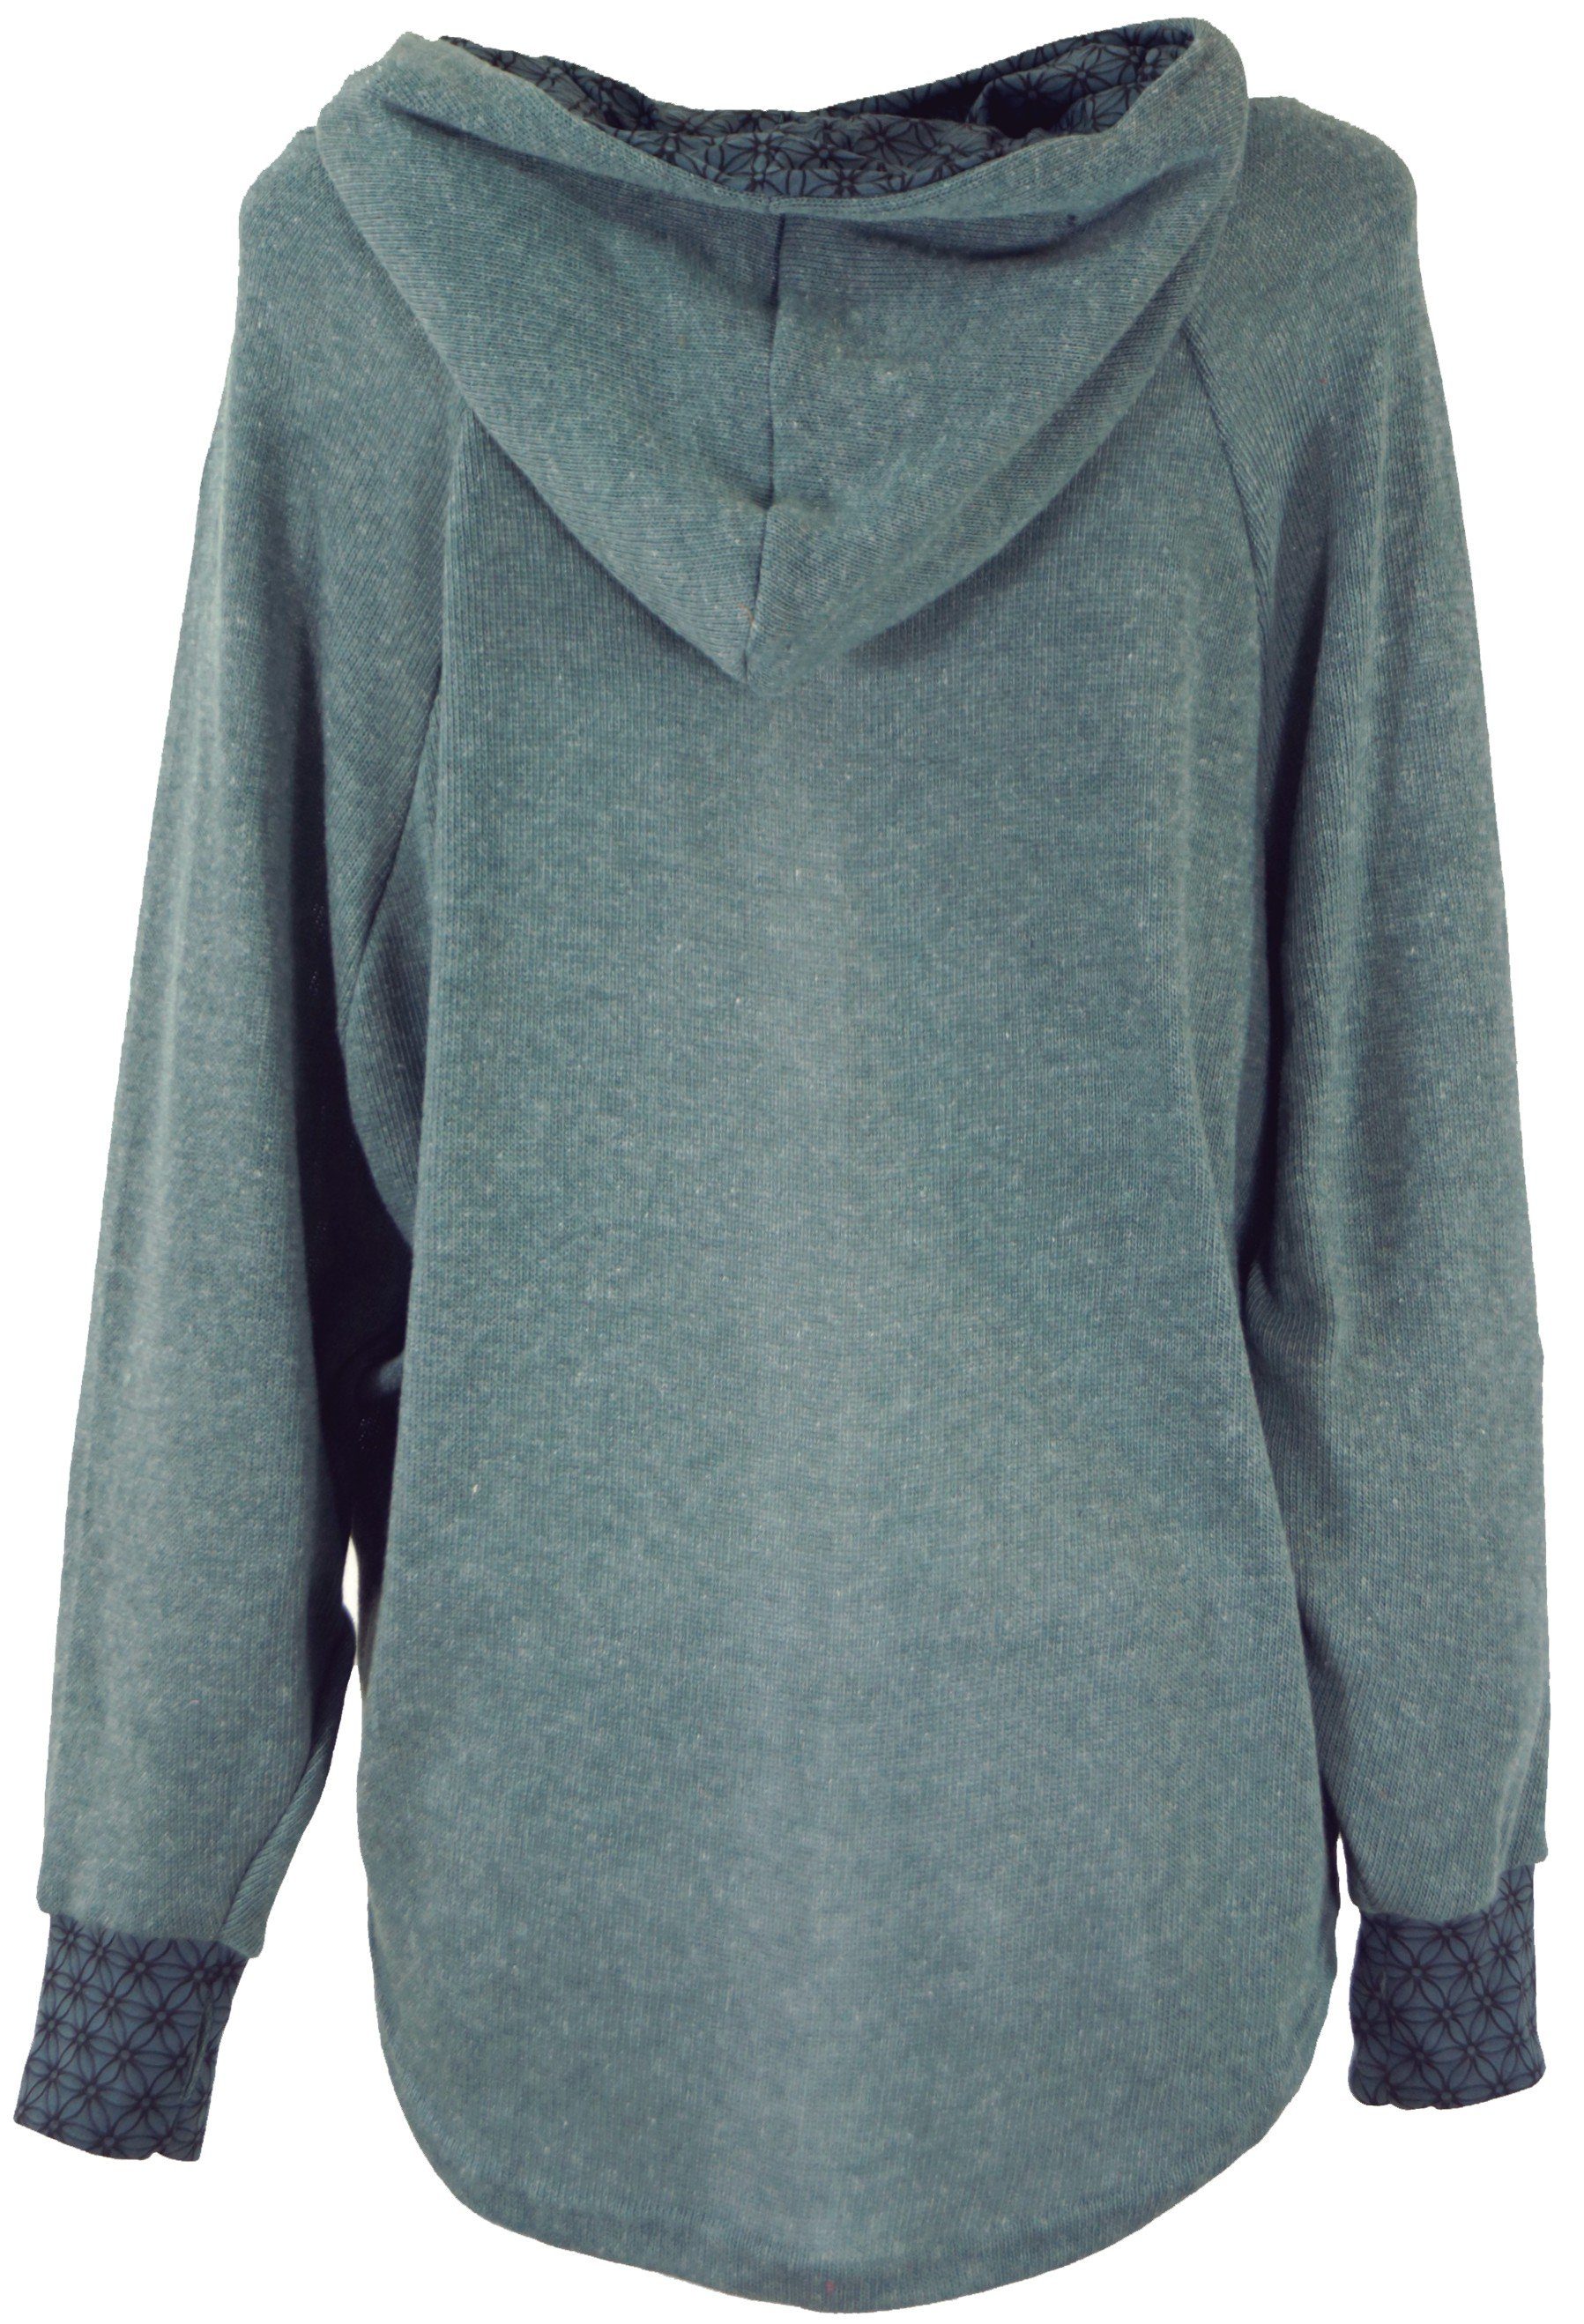 -.. Kapuzenpullover Hoody, Sweatshirt, taubenblau Longsleeve alternative Pullover, Guru-Shop Bekleidung